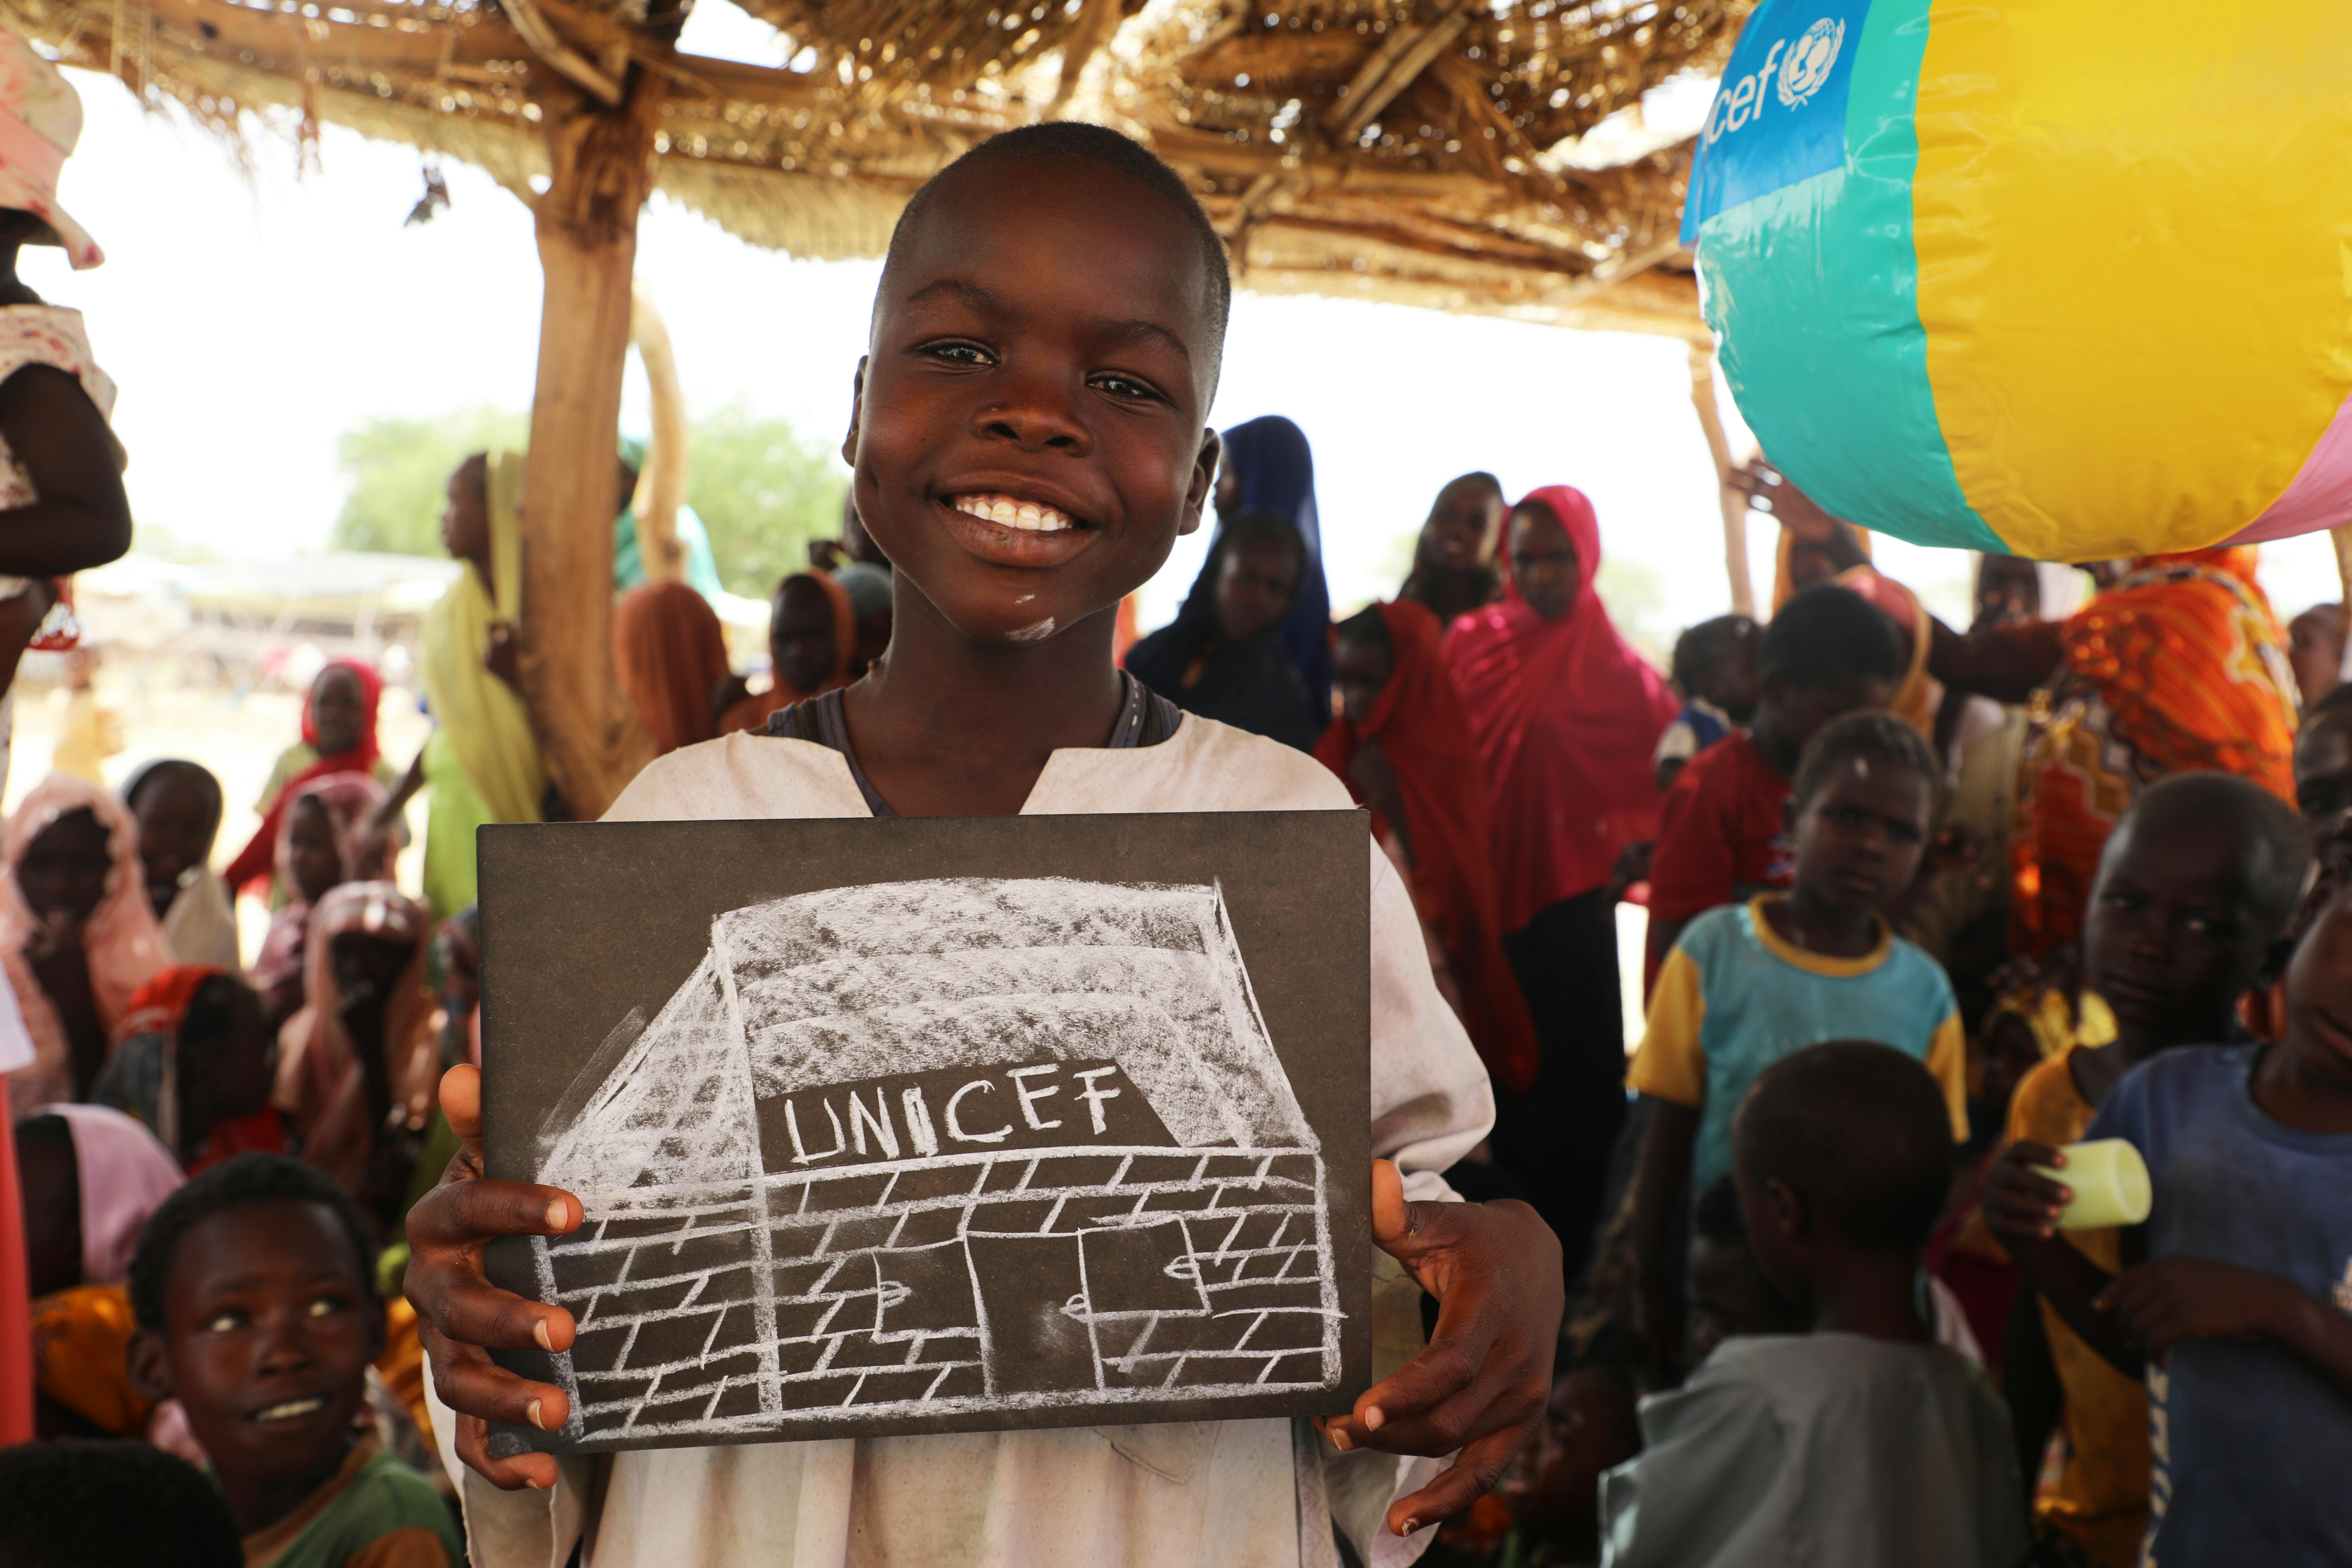 Il tredicenne Abdelaziz, mostra il disegno che ha realizzato mentre si trovava nel Child Friendly Space gestito da UNICEF e Croce Rossa: “Vorrei solo la pace, così posso tornare a casa in Sudan” ci dice.